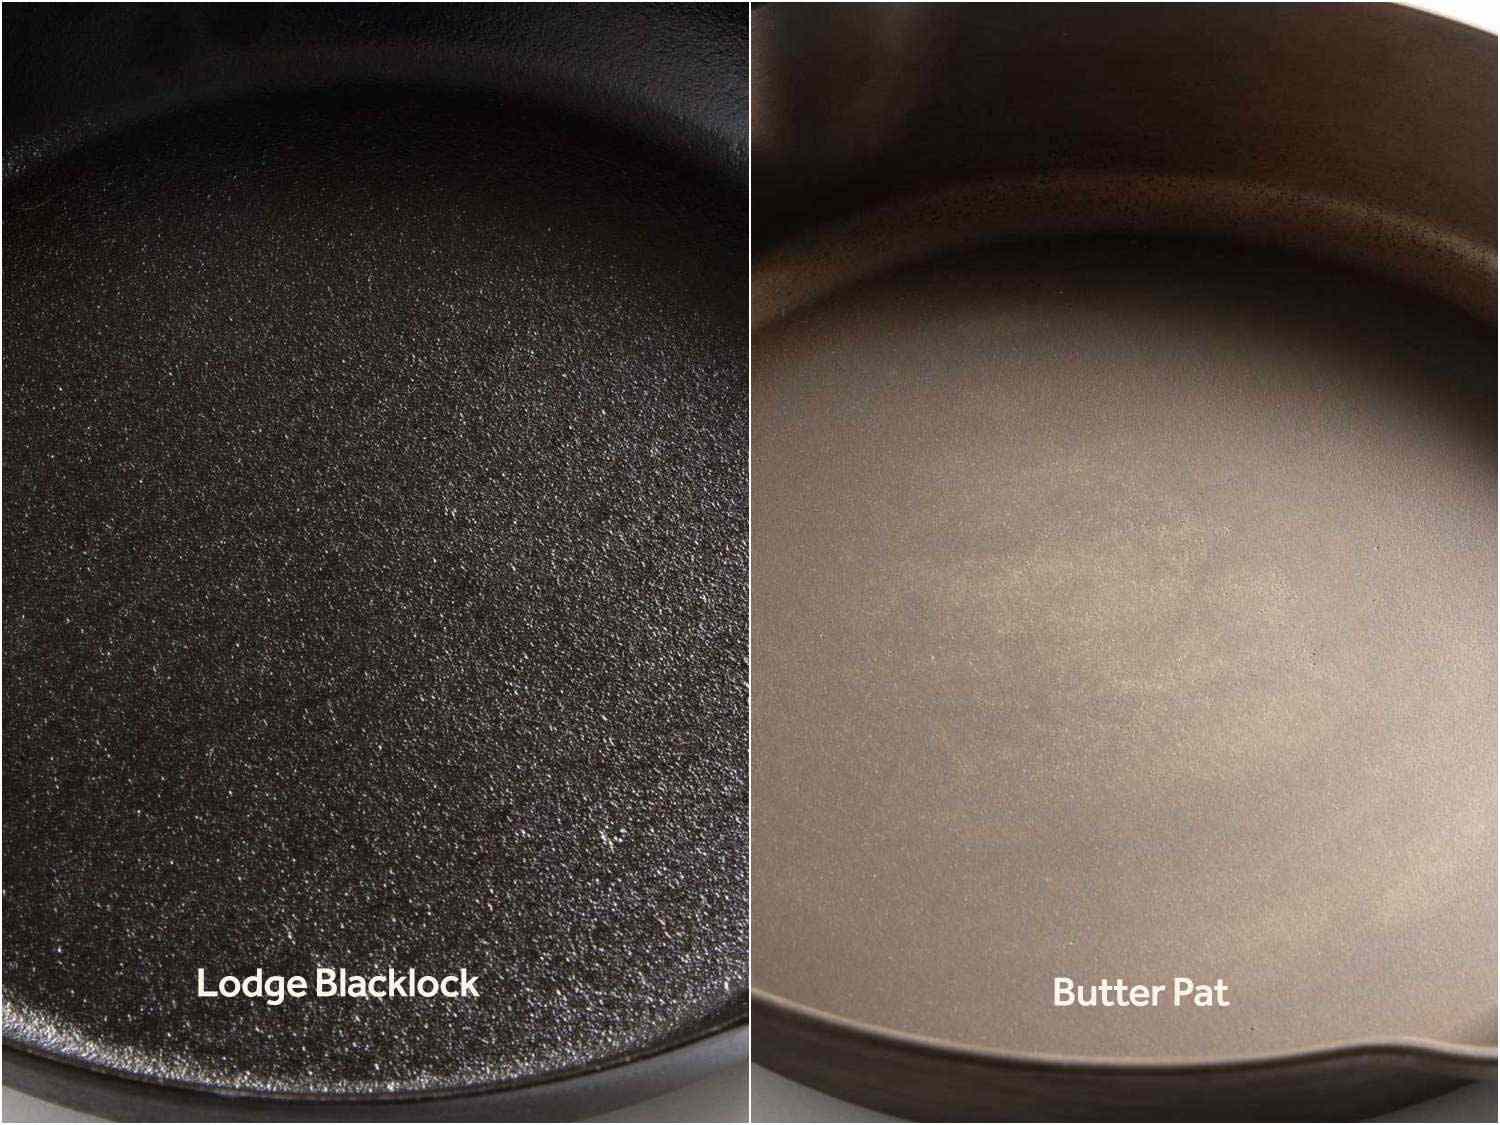 对比两种铸铁煎锅的表面，可以看出表面质地的差异(洛奇锅更粗糙，黄油派锅更光滑)以及调味程度的差异(洛奇锅的黑色更深，说明调味更多，而黄油派锅的棕色更浓，说明调味更少)。